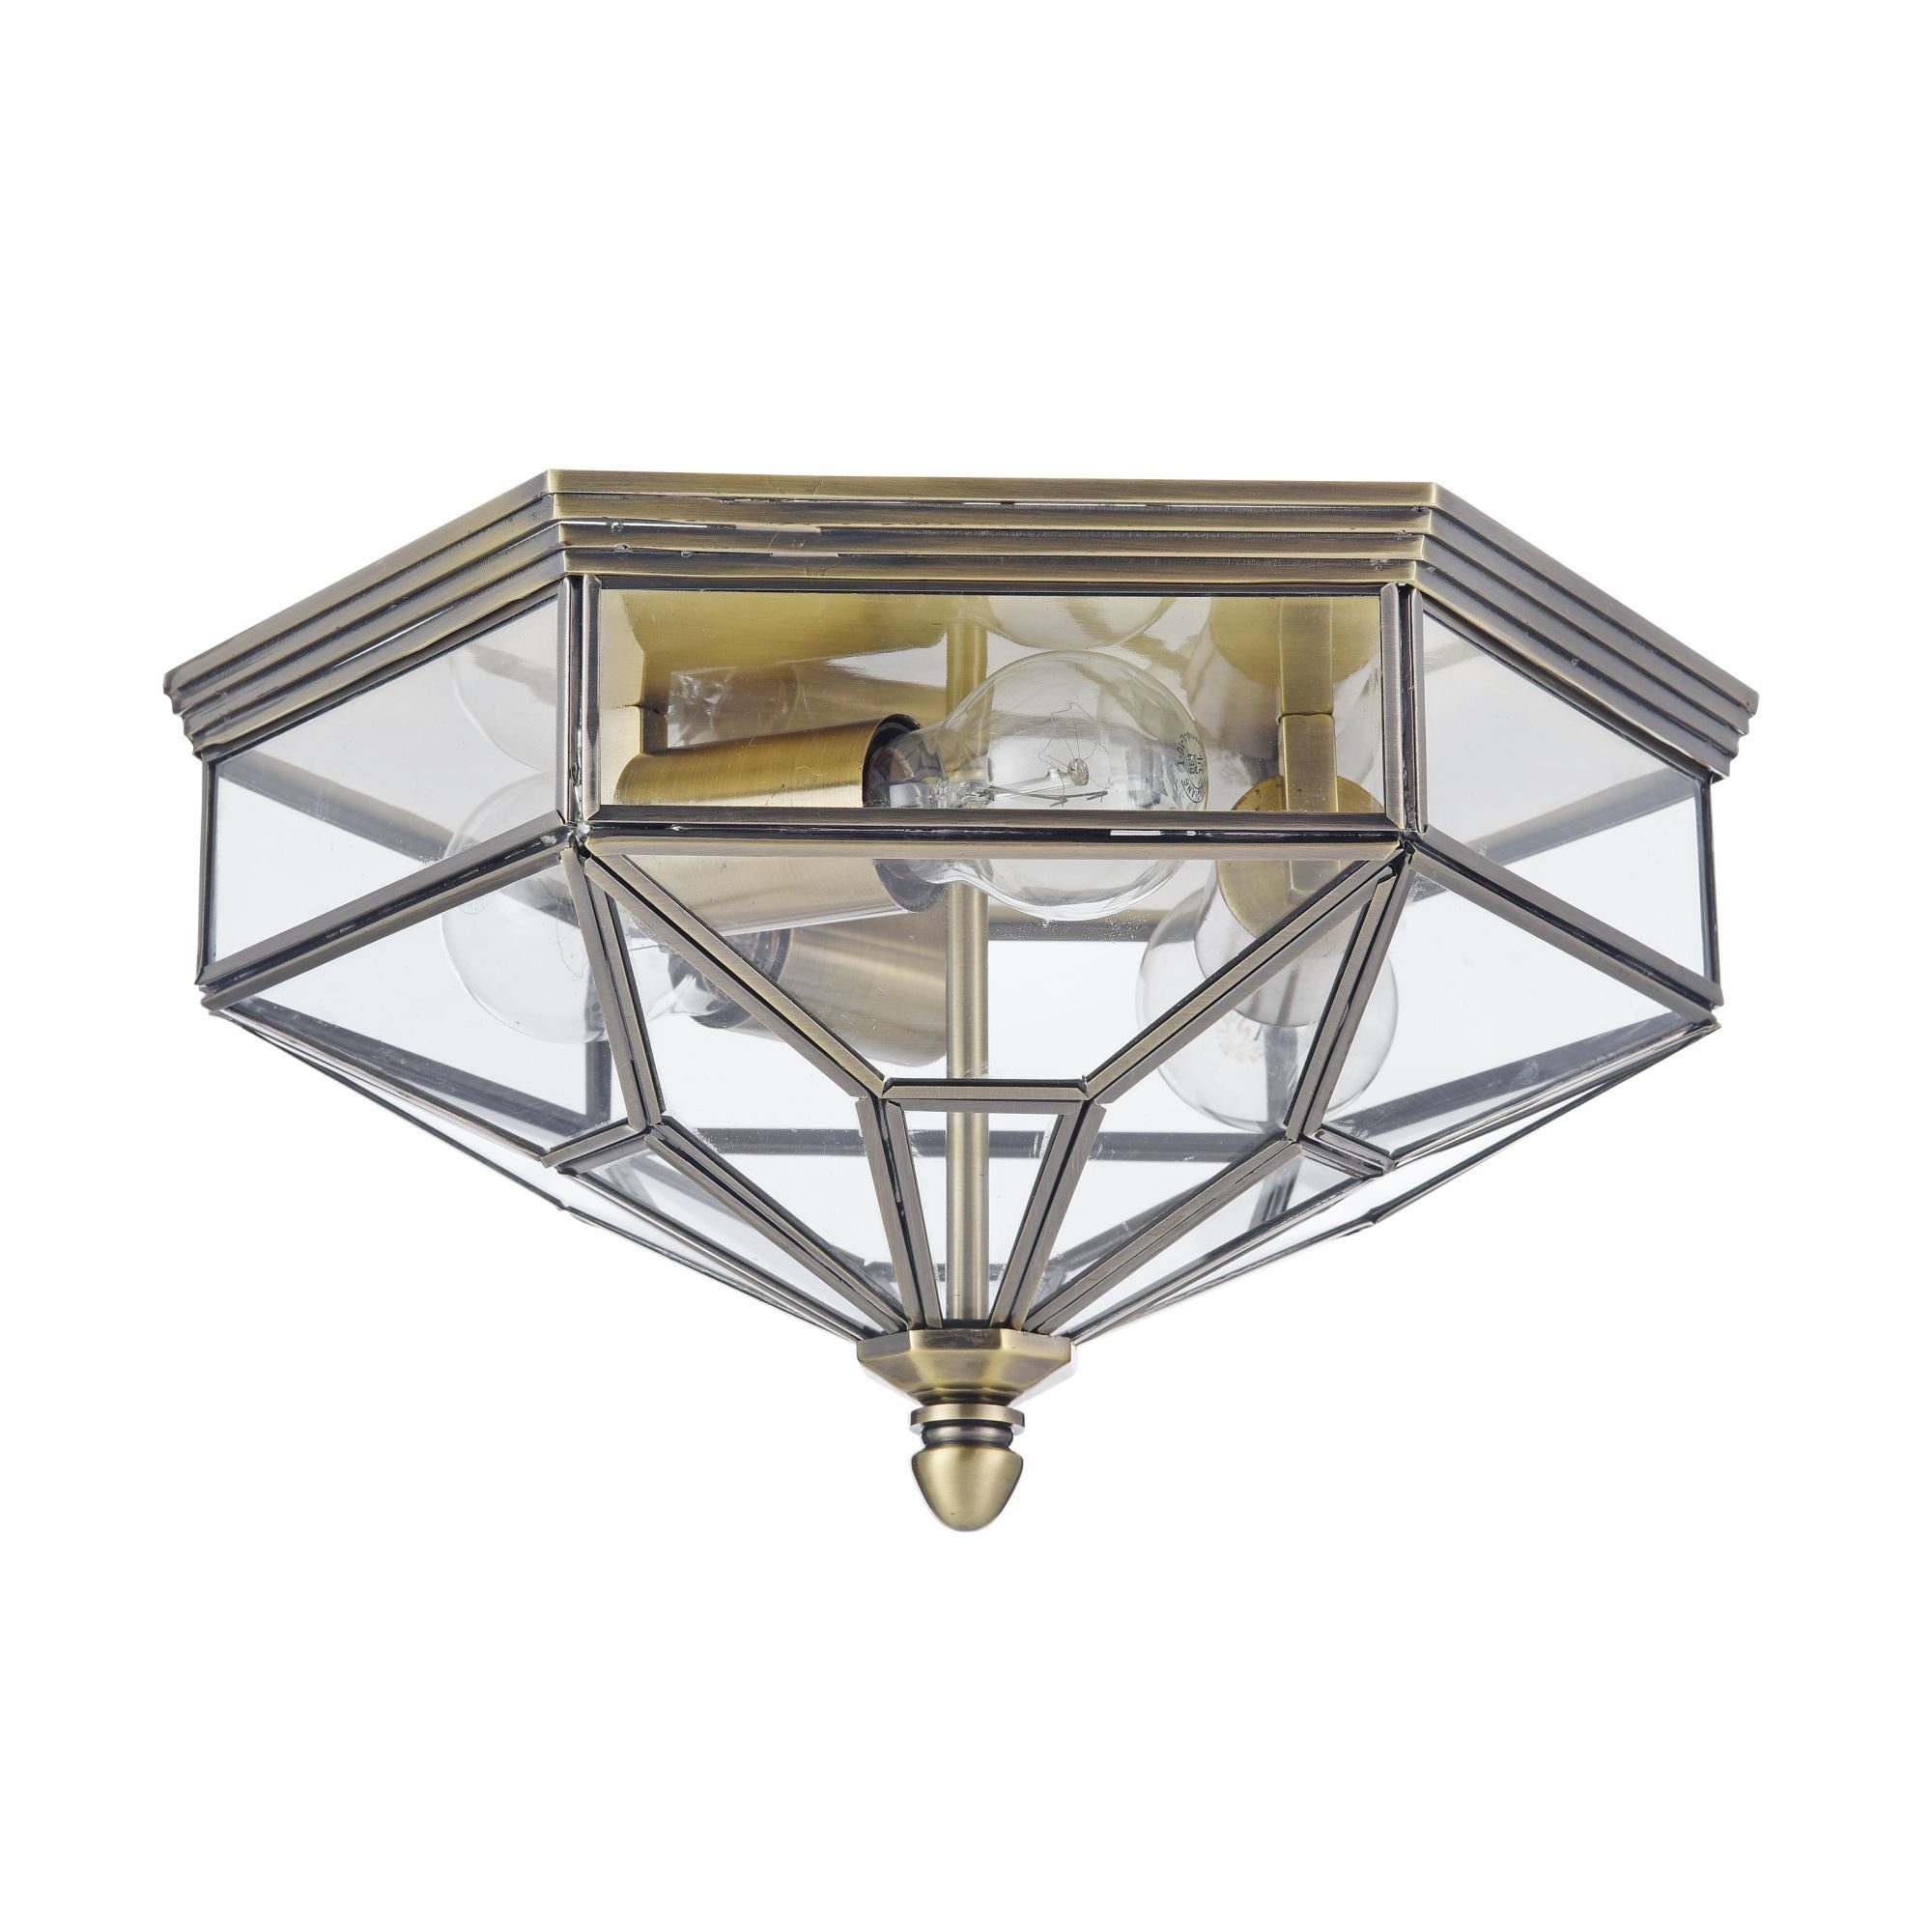 MAYTONI Raumobjekt cm, Deckenleuchte 30.4x19.2x35.2 LIGHTING Lampe Design Leuchtmittel, Zeil dekoratives & DECORATIVE hochwertige ohne